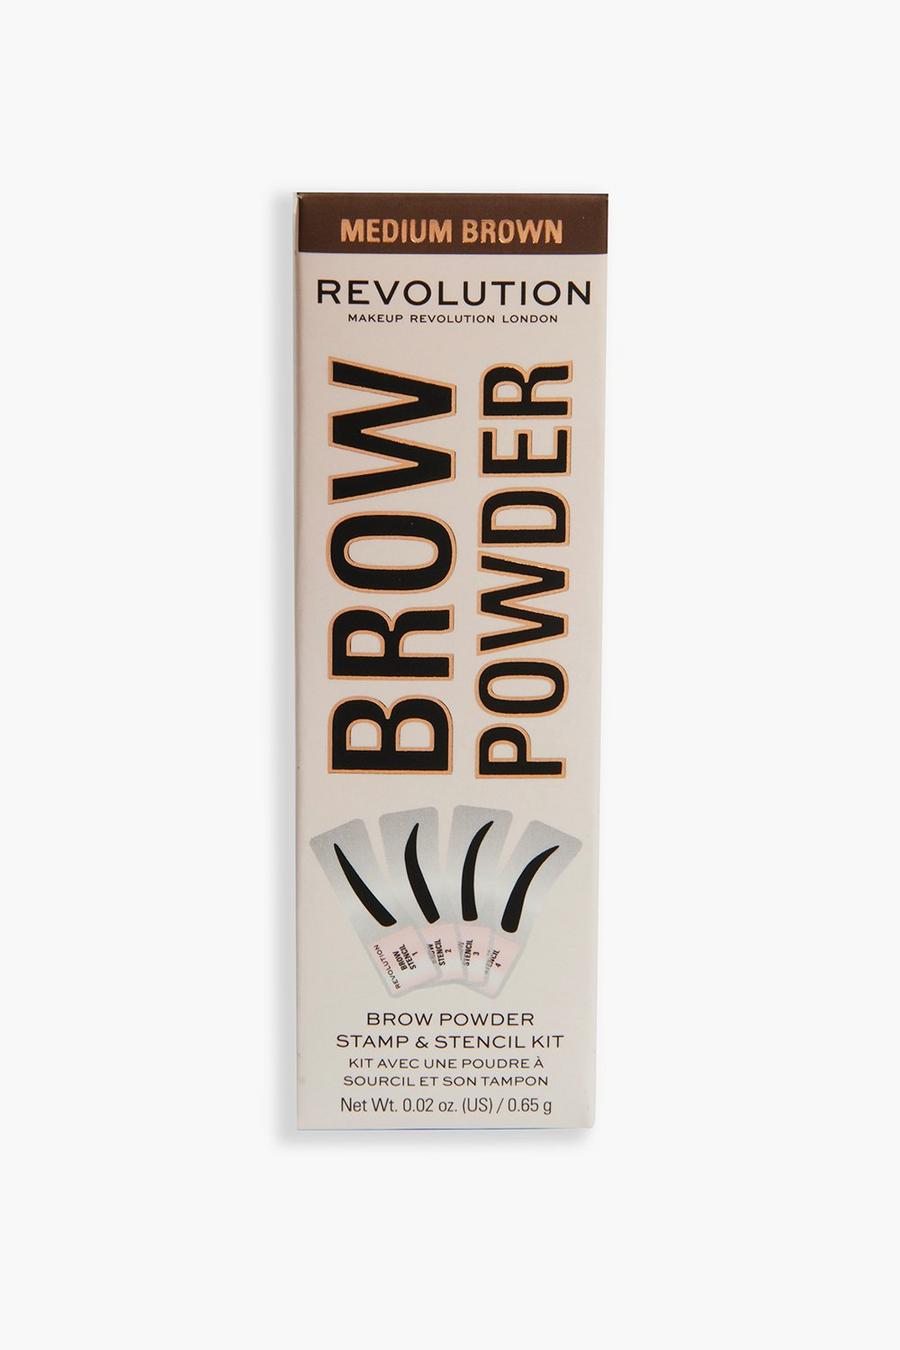 Revolution - Kit sourcils - Stamp & Stencil, Medium brown marron